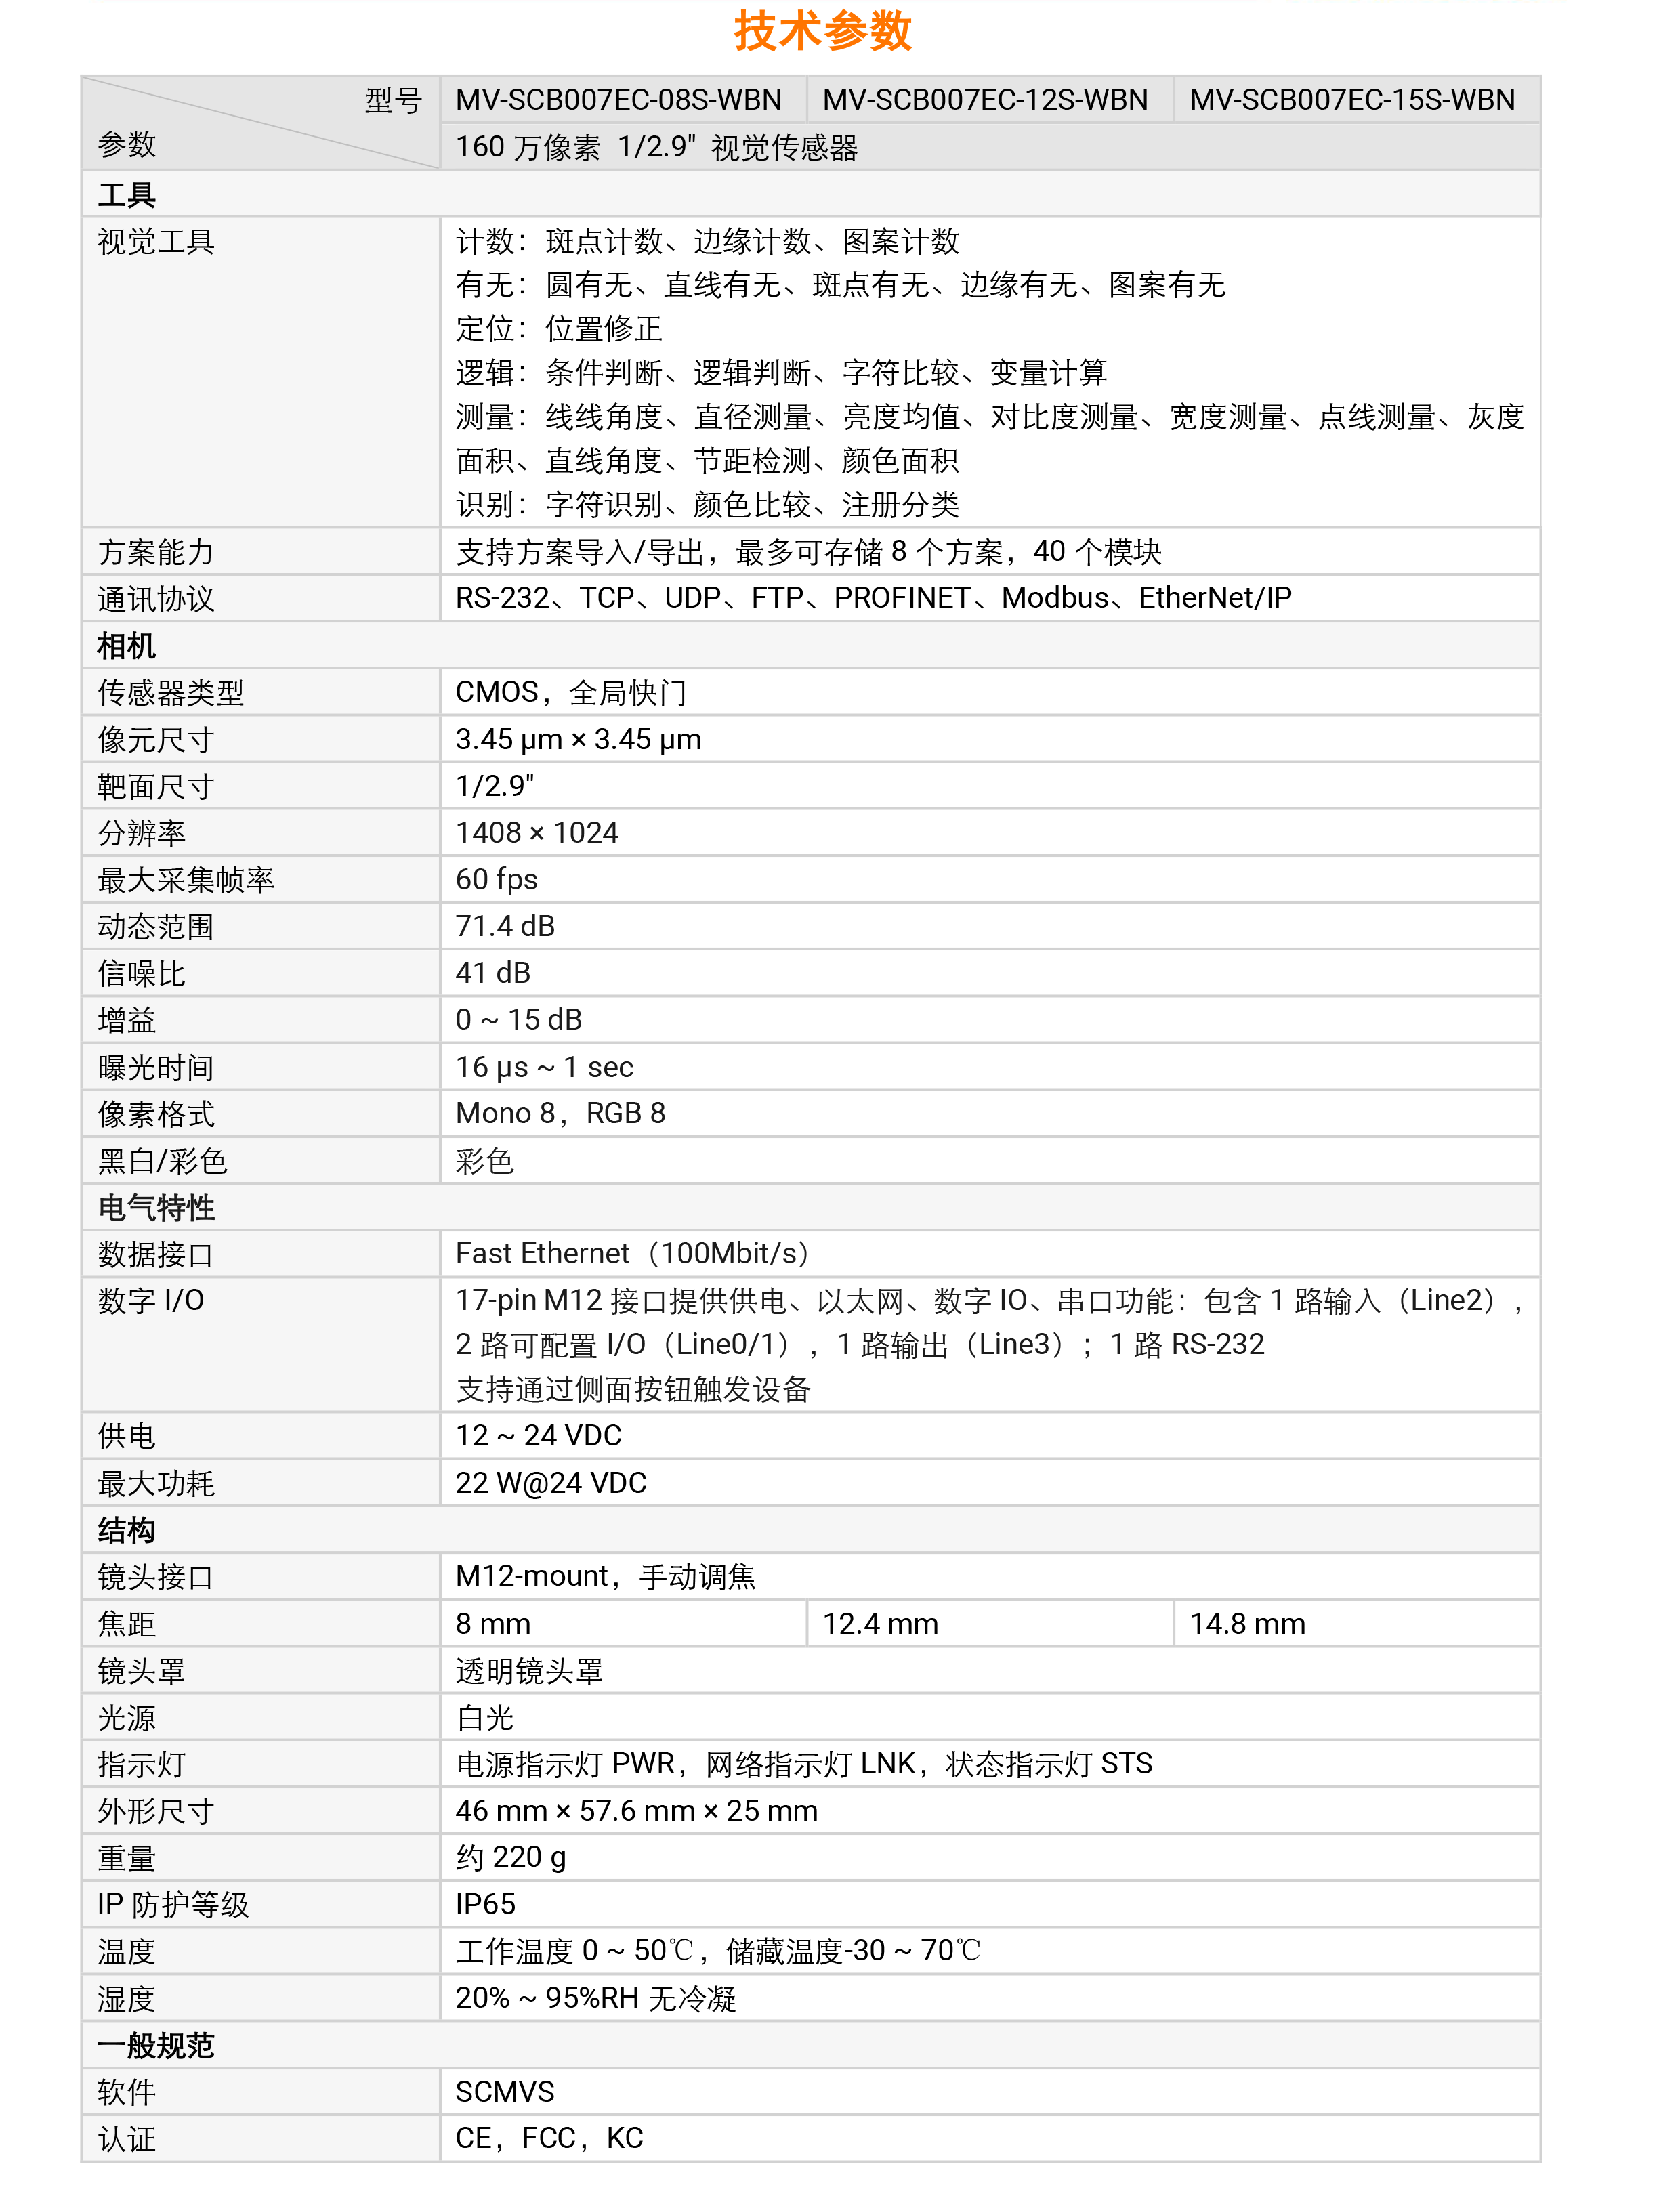 视觉传感器丨海康机器人MV-SCB007EC 160万像素1/2.9″彩色视觉传感器-捷利得(北京)自动化科技有限公司